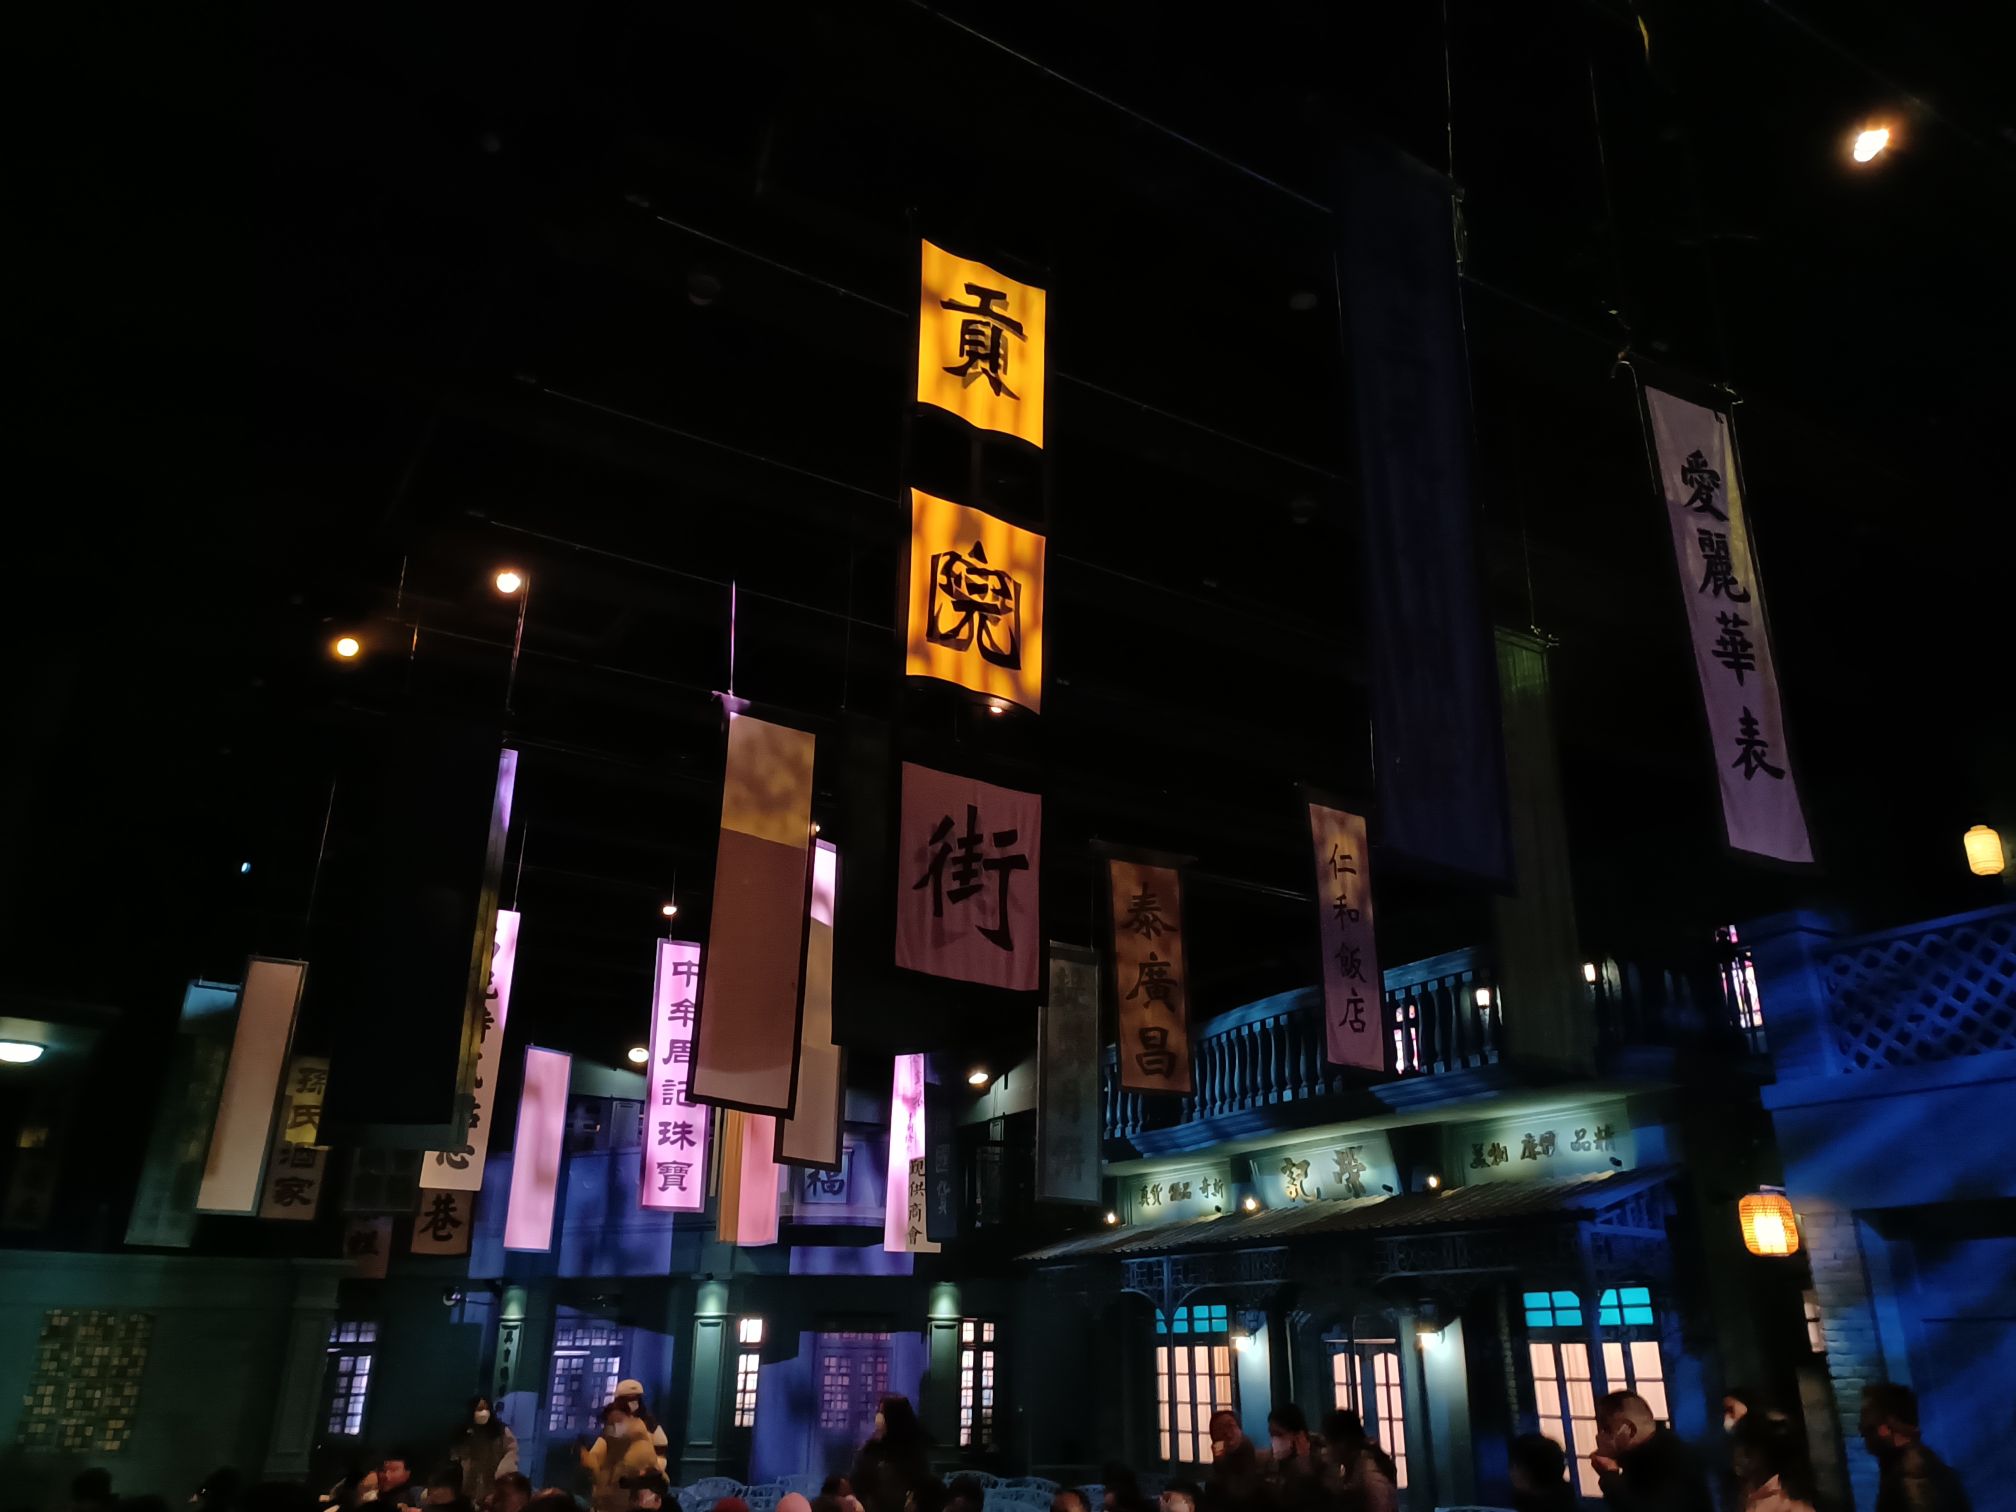 中国最大戏剧聚落群——《只有河南·戏剧幻城》将于6月6日开城迎客-大河报网